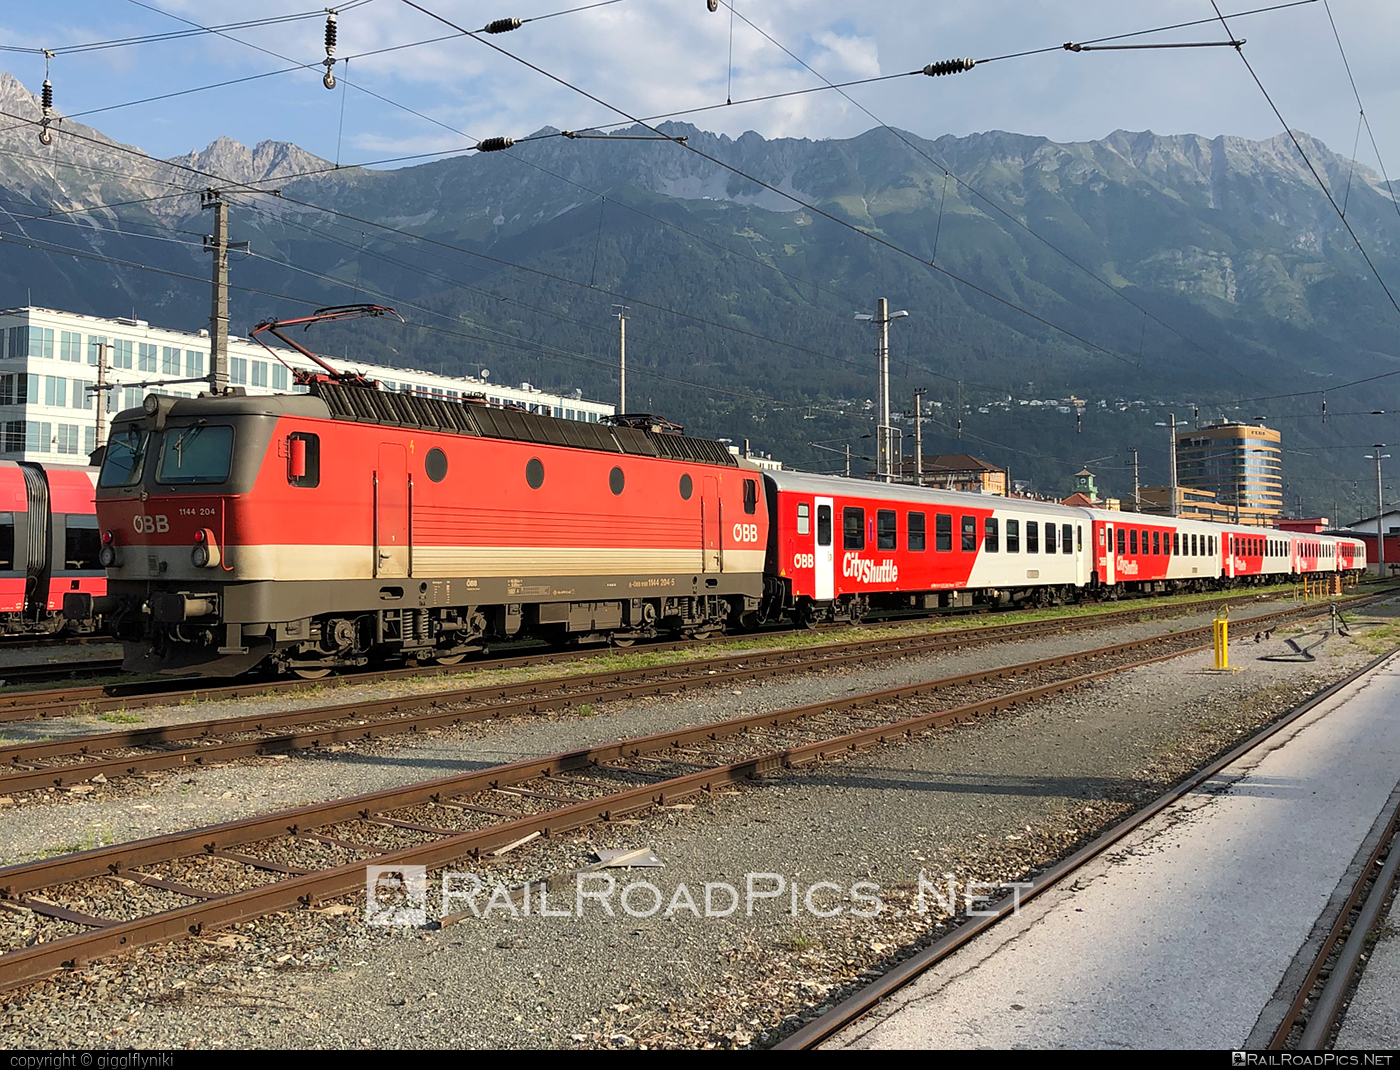 SGP 1144 - 1144 204 operated by Österreichische Bundesbahnen #cityshuttle #obb #obb1144 #obbClass1144 #osterreichischebundesbahnen #sgp #sgp1144 #simmeringgrazpauker